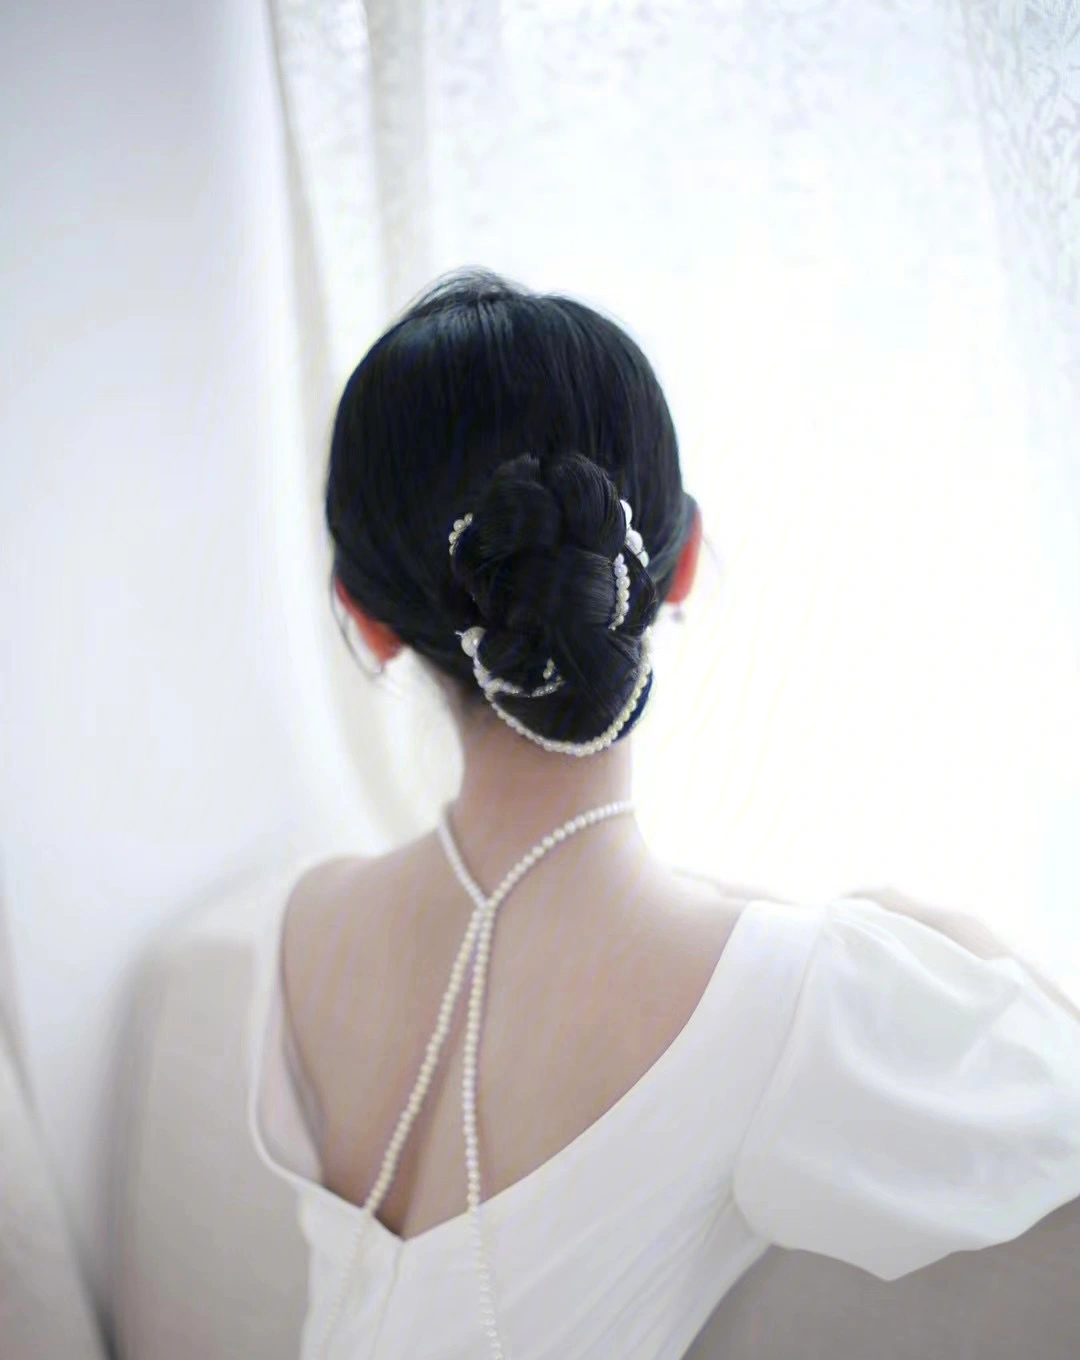 什么神仙颜值新娘9669♀15也太美了吧,配上最近流行的珍珠盘发